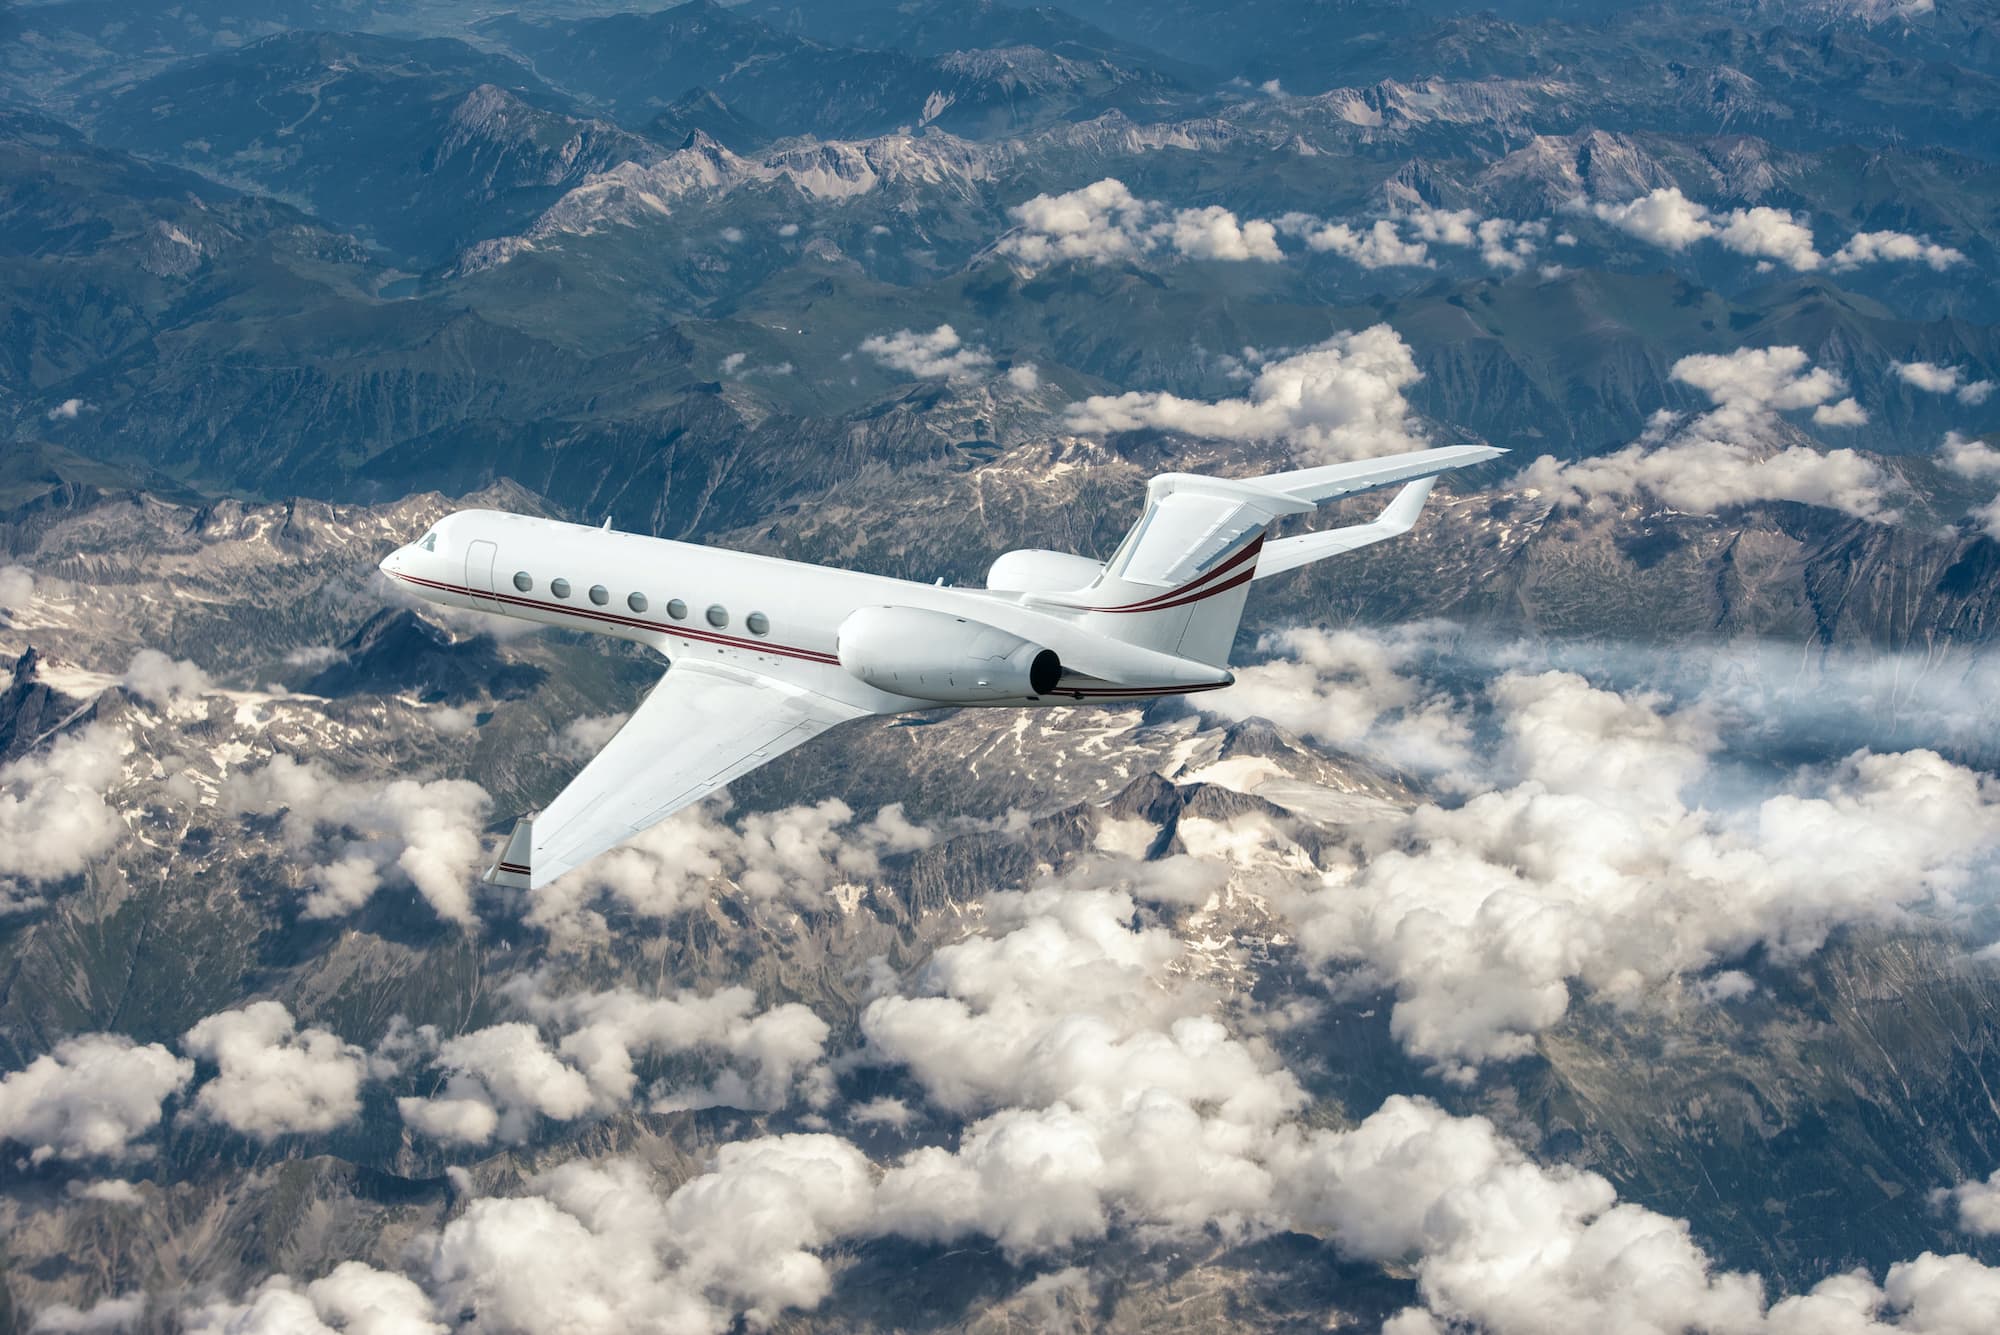 Poslovni mlazni avion leti na velikoj nadmorskoj visini iznad oblaka